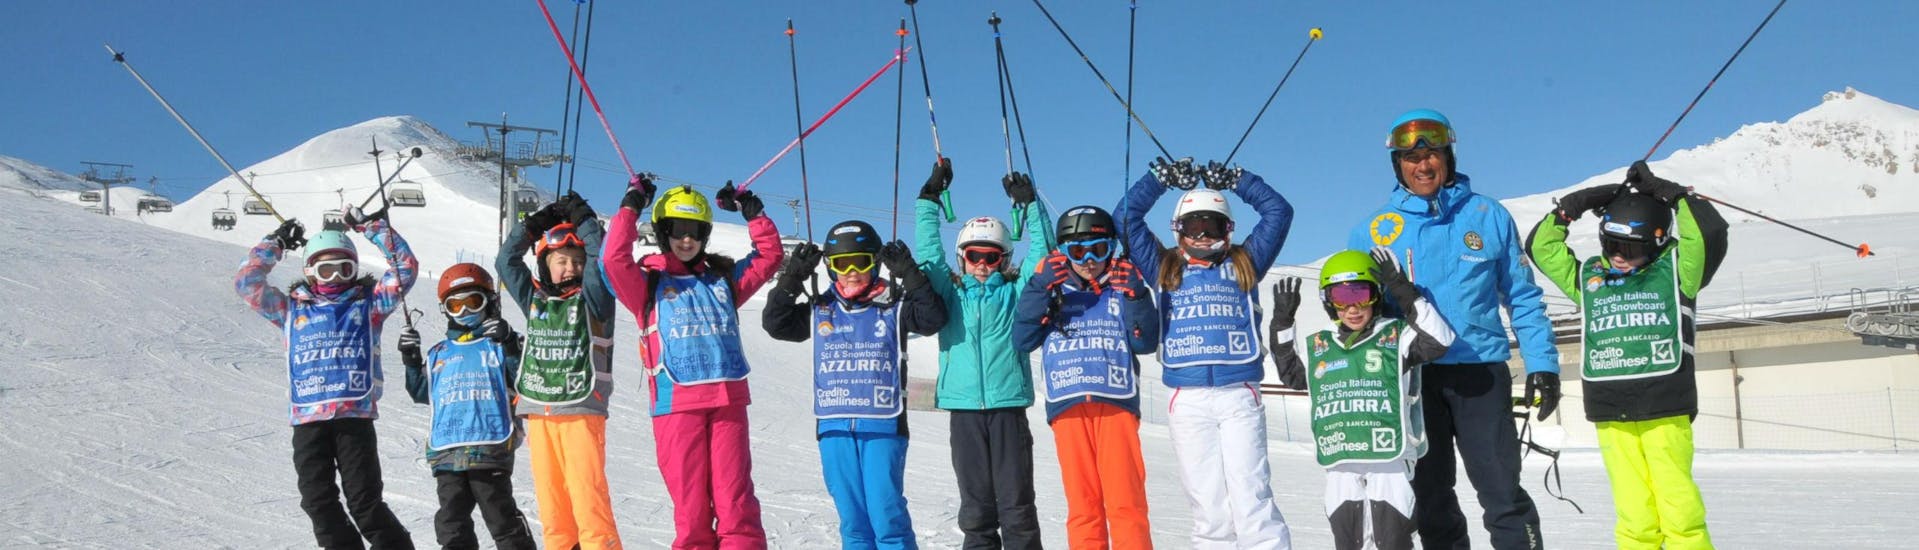 Un groupe d'enfants profite de ses cours de ski pour enfants (4-14 ans) - Journée complète avec l'école de ski Scuola di Sci Azzurra Livigno sur les pistes de ski de Livigno.